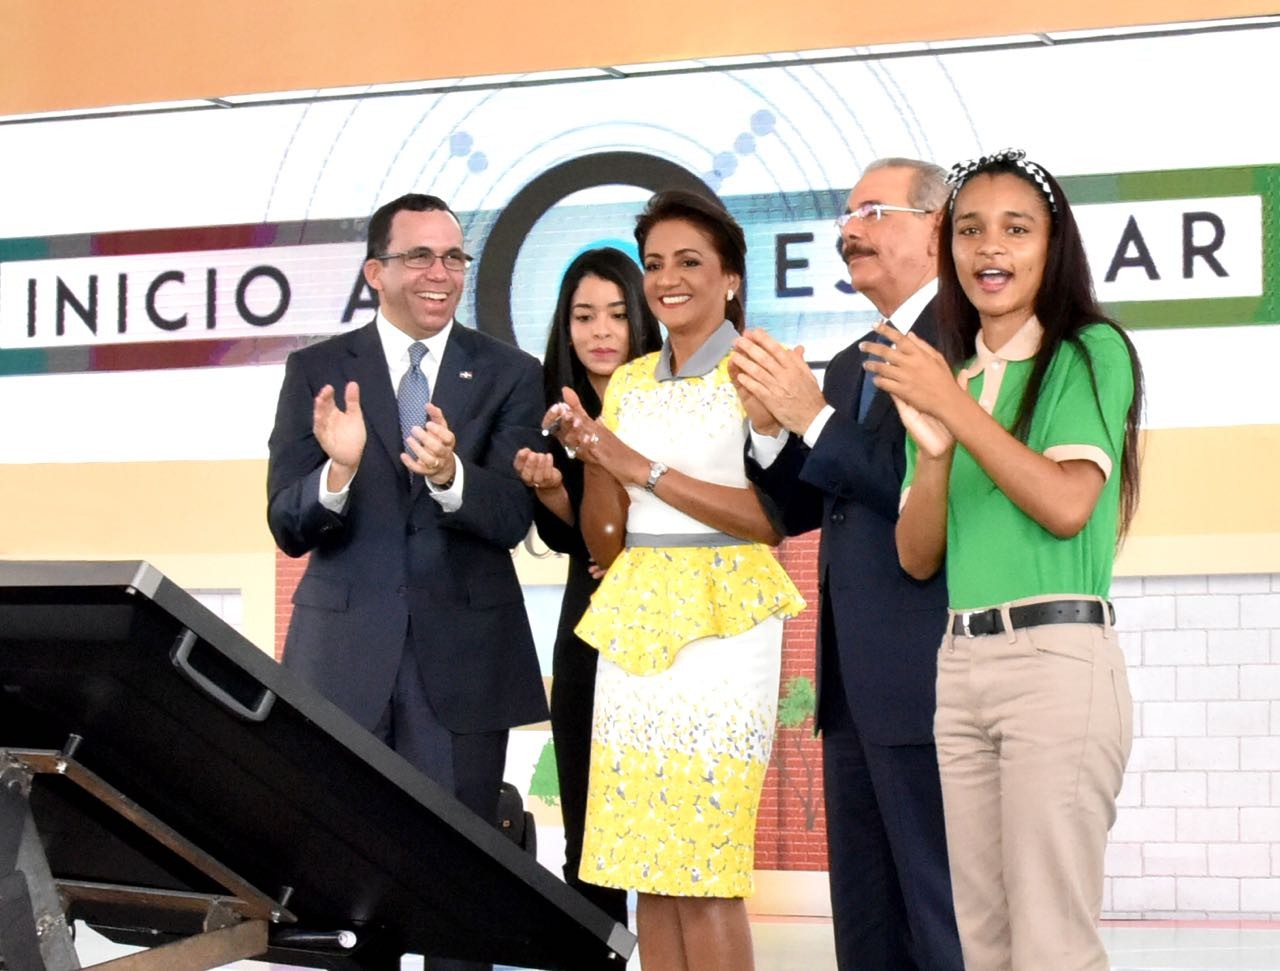  imagen Presidente Danilo Medina,  Primera Dama Candida Montilla de Medina, Ministro Andrés Navarro y estudiante de secuandaria de pies aplaudiendo con alegria el inicio del Año Escolar 2018-2019 